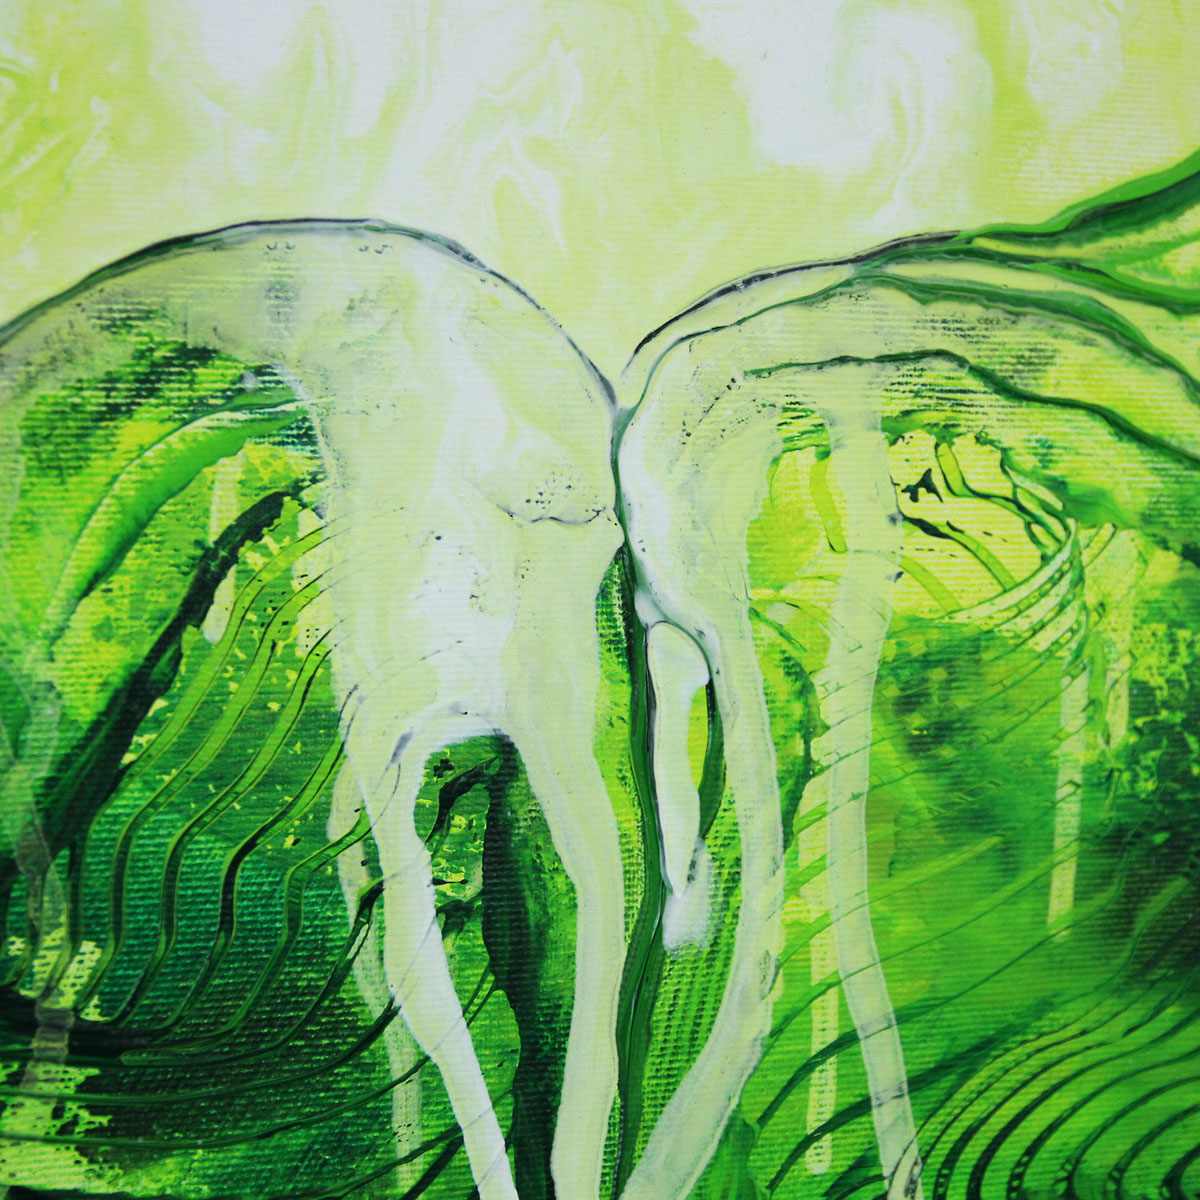 Acrylbild von J. Fernandez: "Green Valley II"